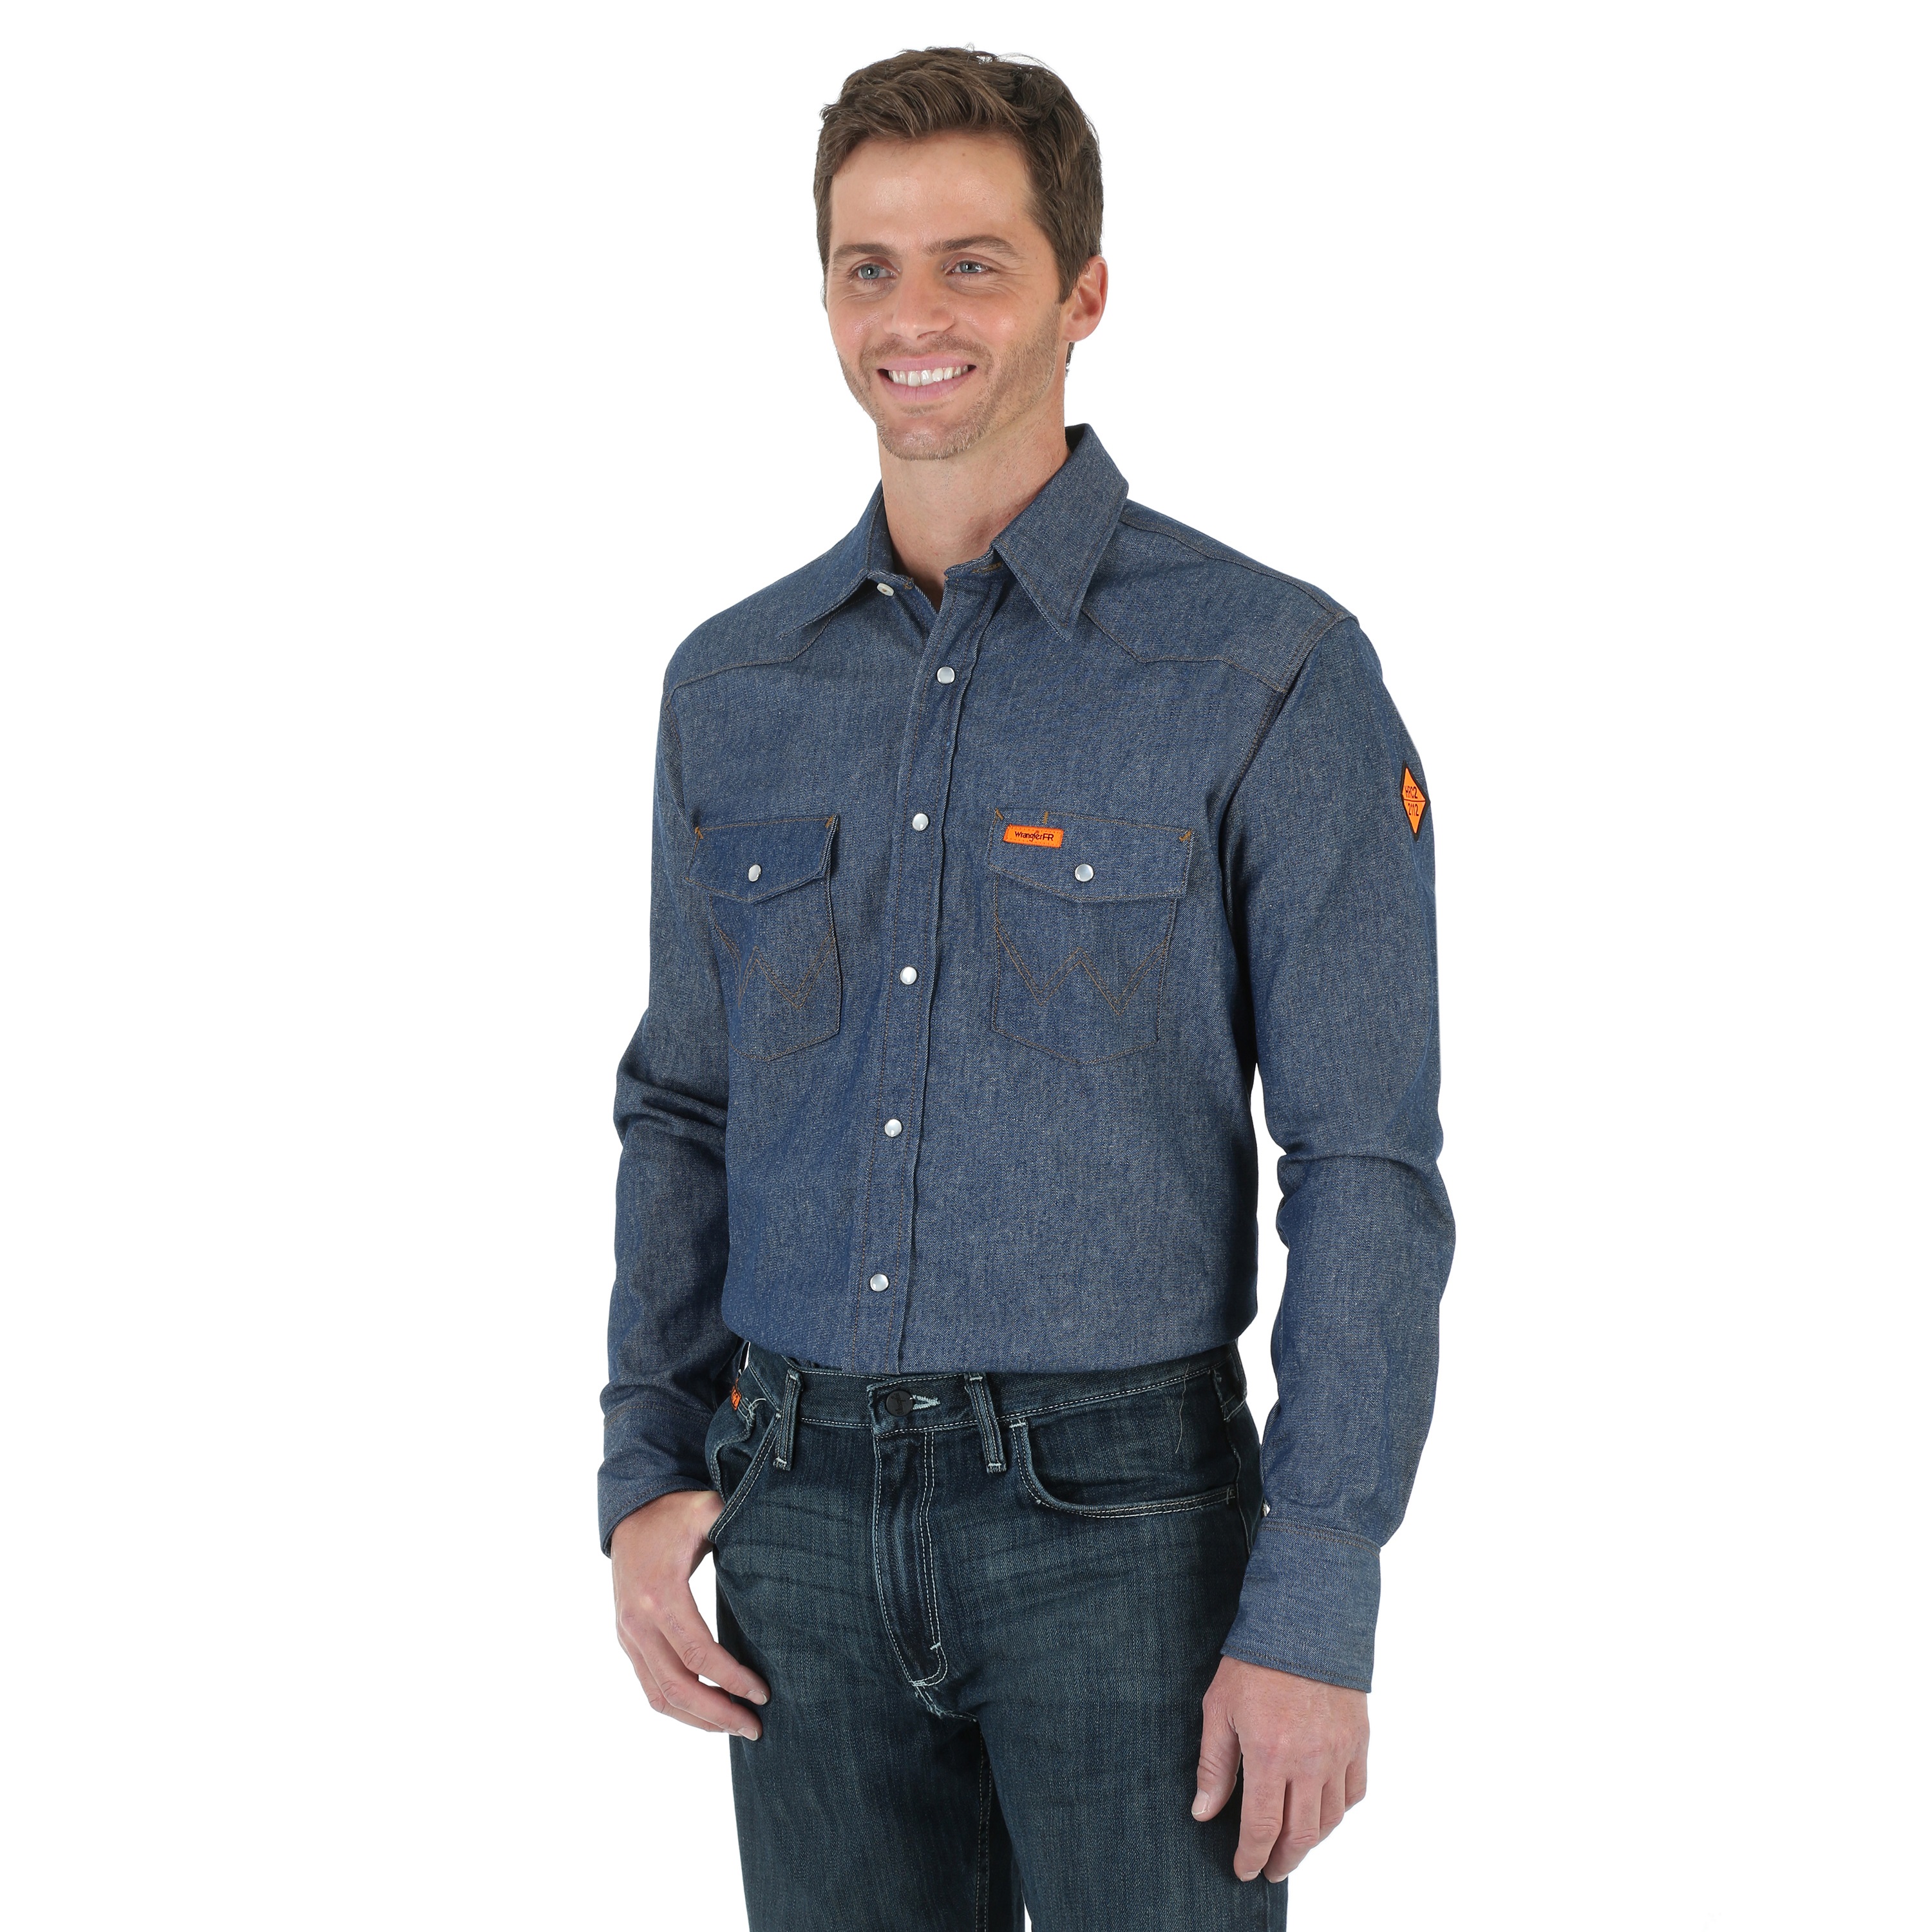 Cowboy Style FR Button Up Work Shirt in denim